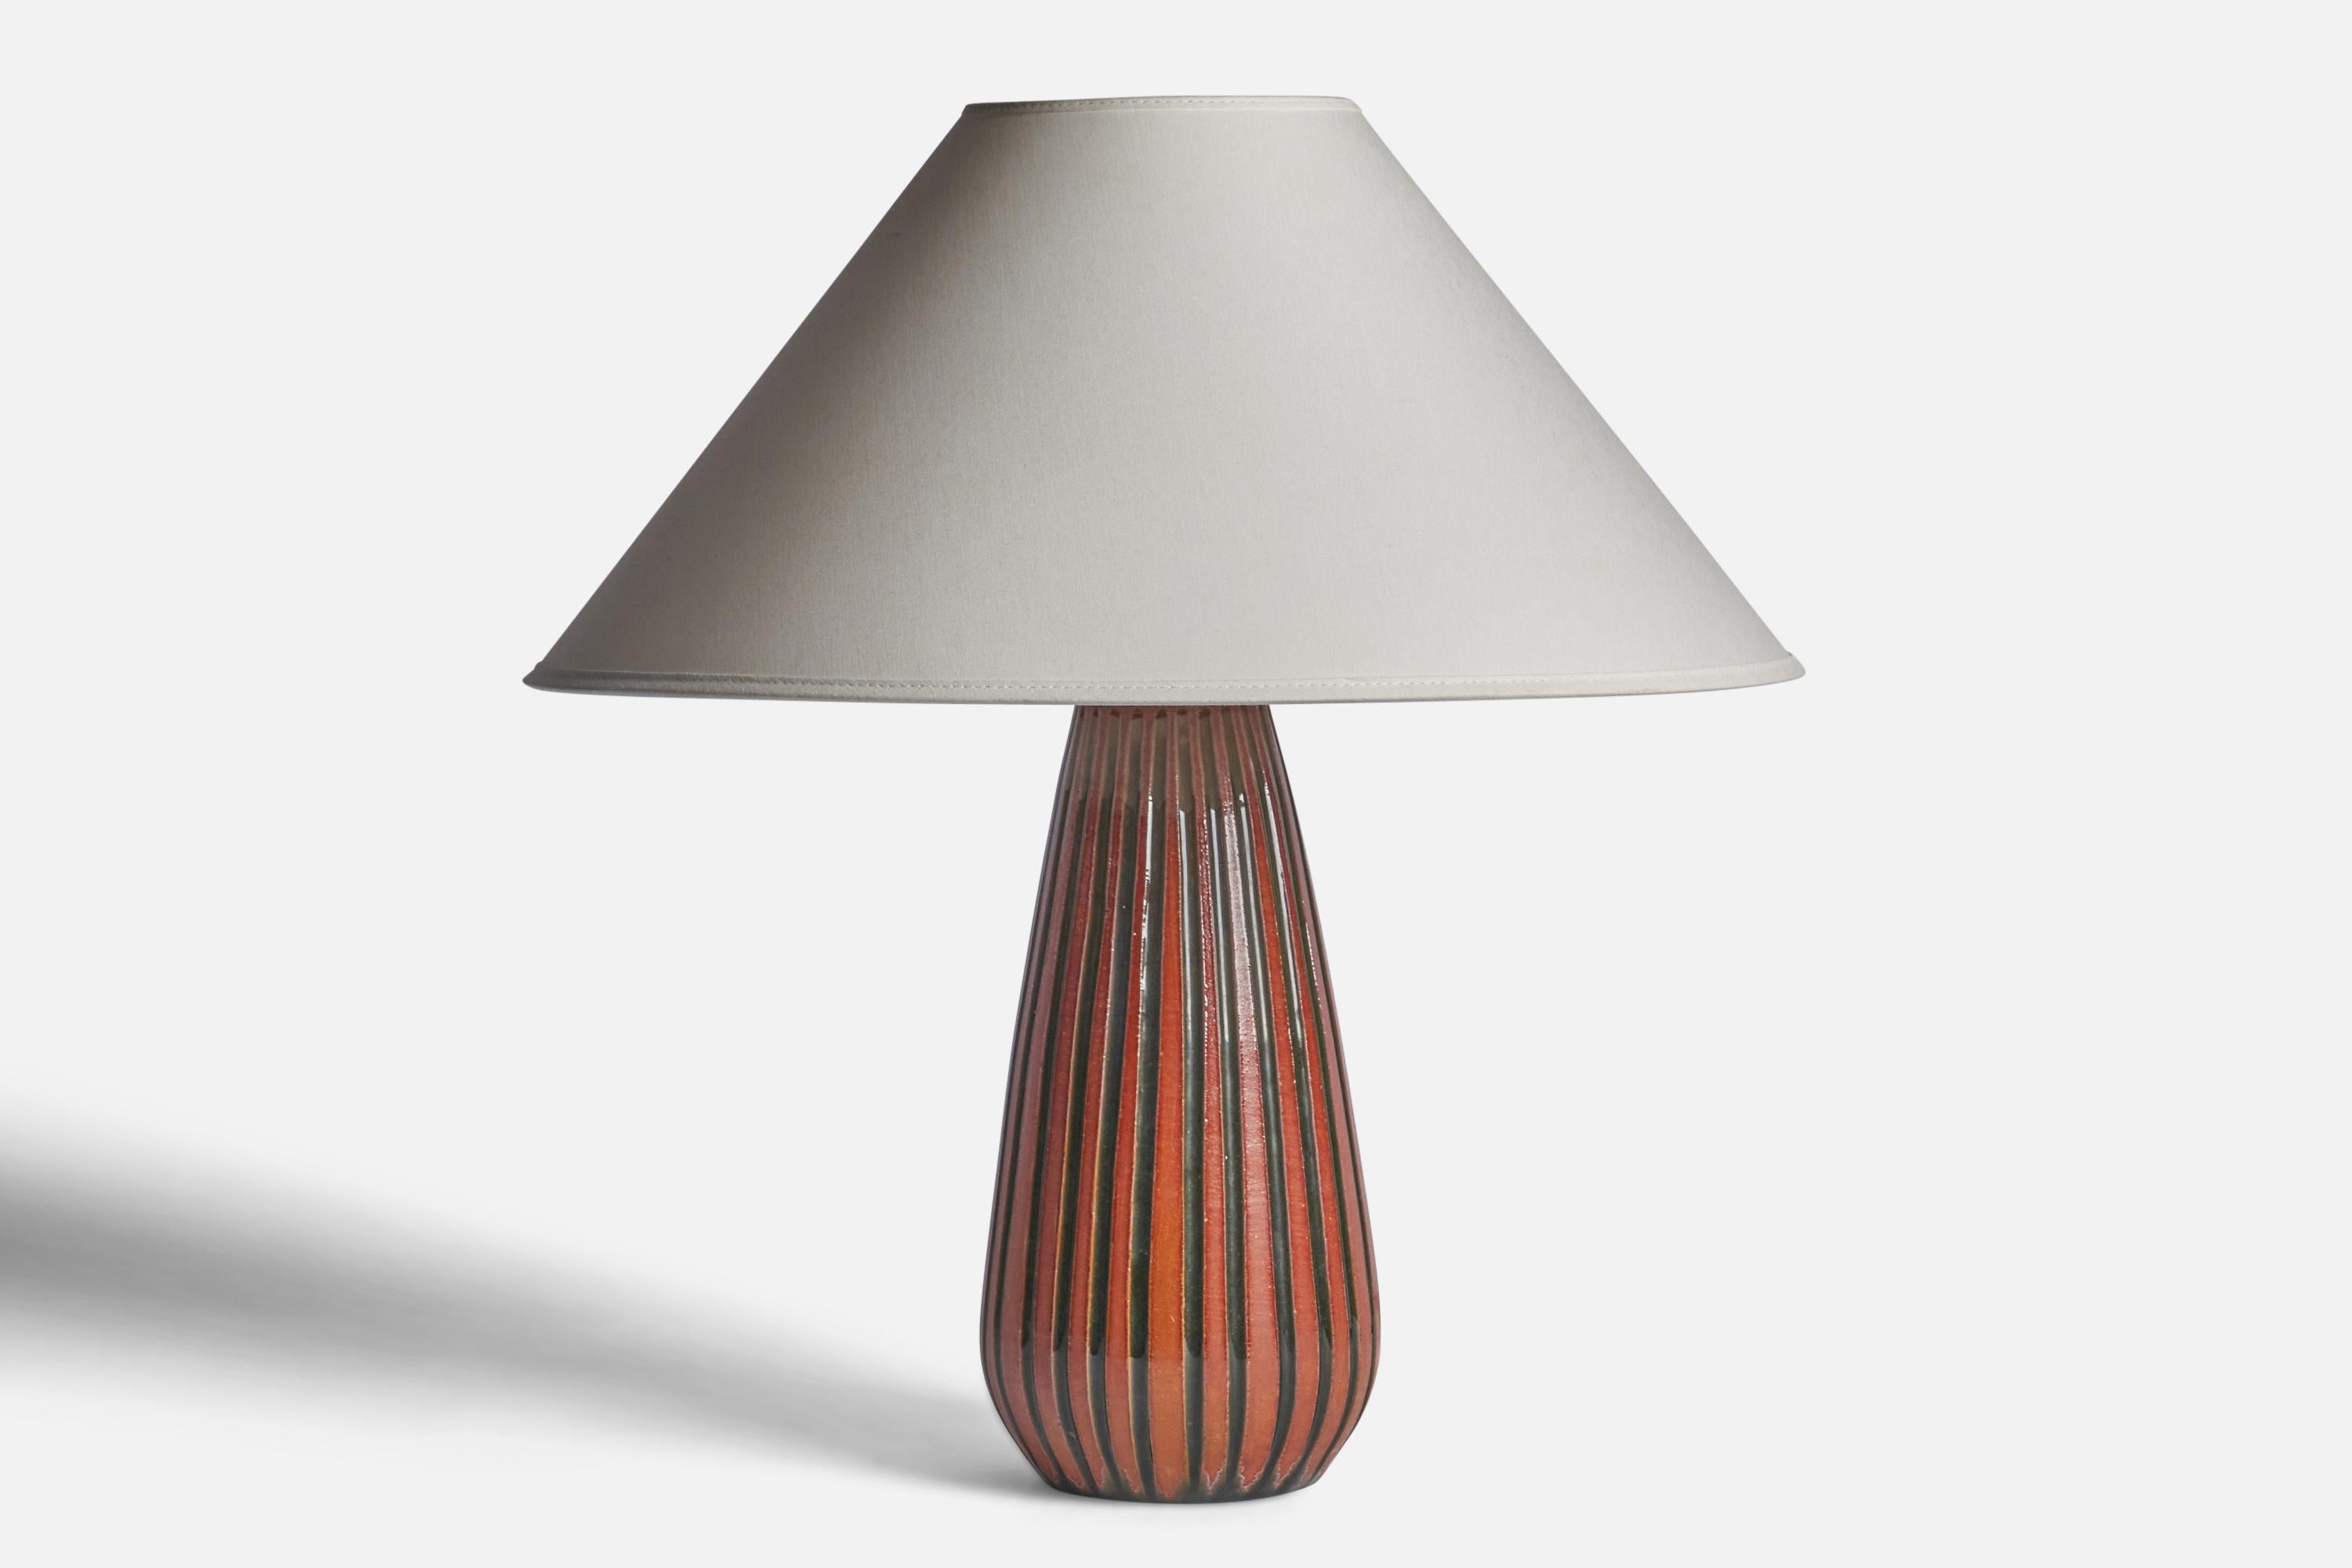 Lampe de table en faïence émaillée orange et noire conçue par Ingrid Atterberg et produite par Upsala Ekeby, Suède, années 1950.

Dimensions de la lampe (pouces) : 12.5